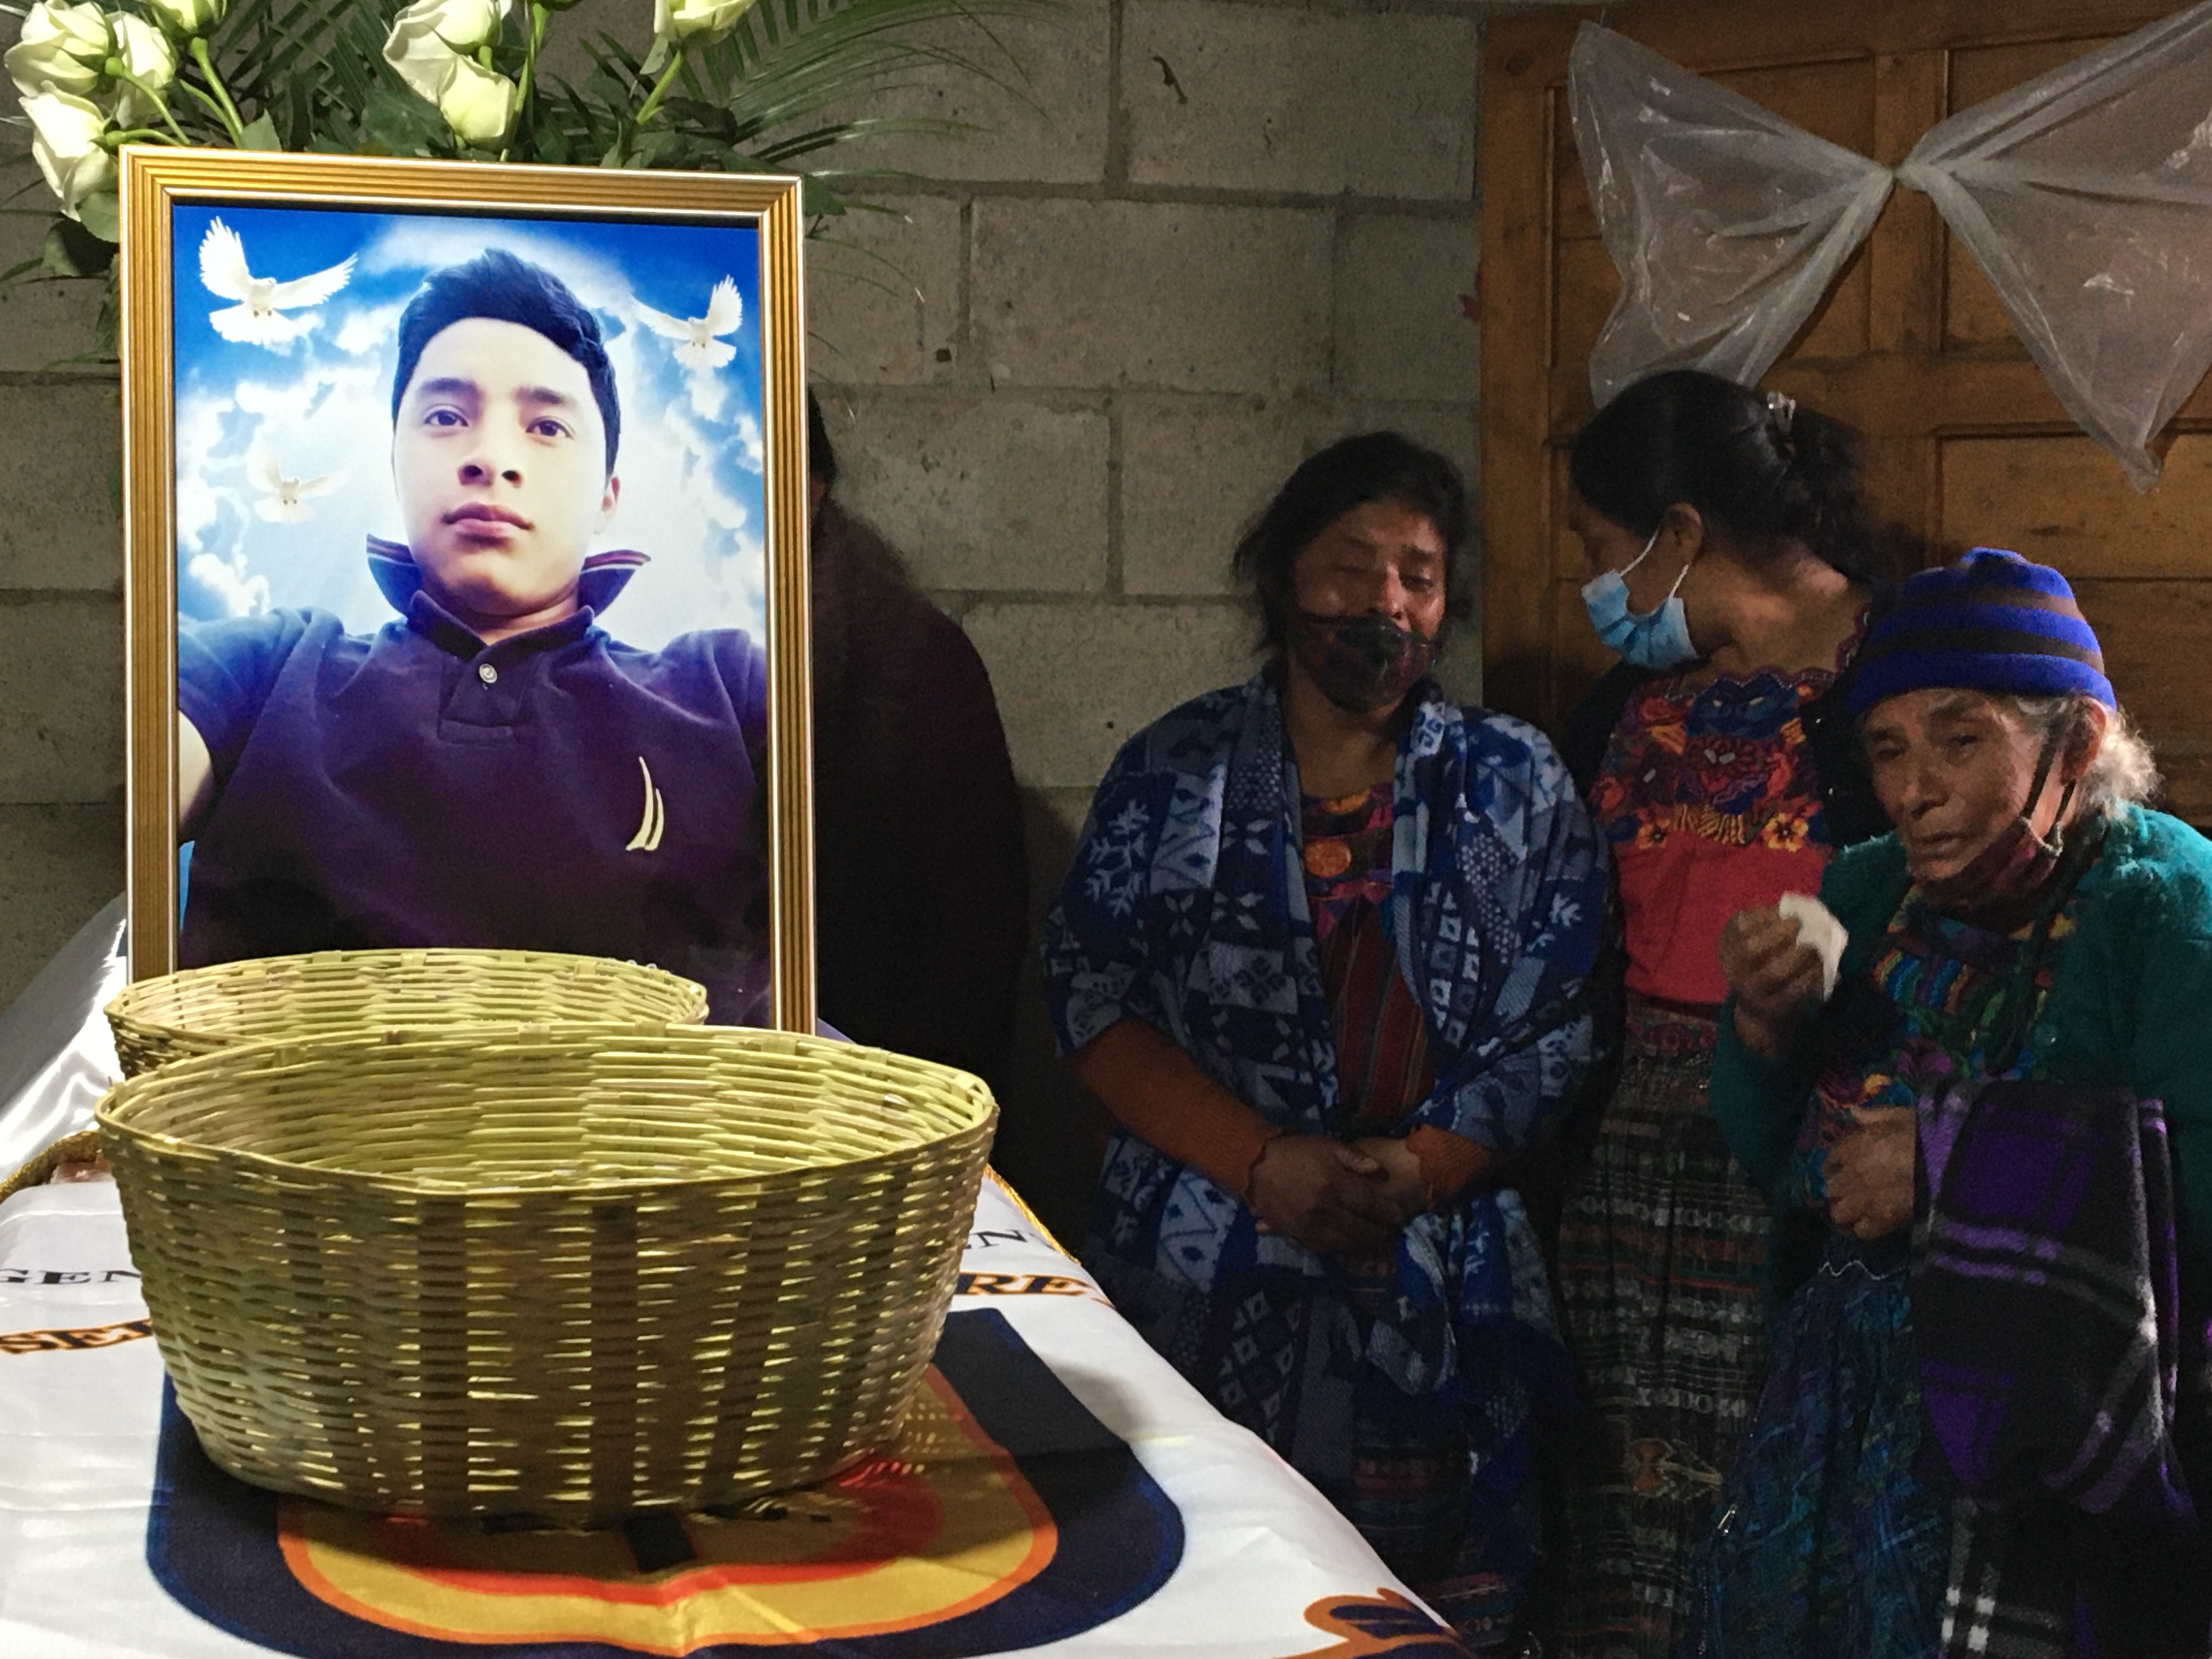 Familiares y amigos de Richard Levi Ordóñez Guarcas, de 17 años, una de las víctimas mortales del fatídico accidente en Chiapas, participan en el funeral, en una aldea de Santa Apolonia, Chimaltenango. (Foto Prensa Libre: Amy Sánchez)